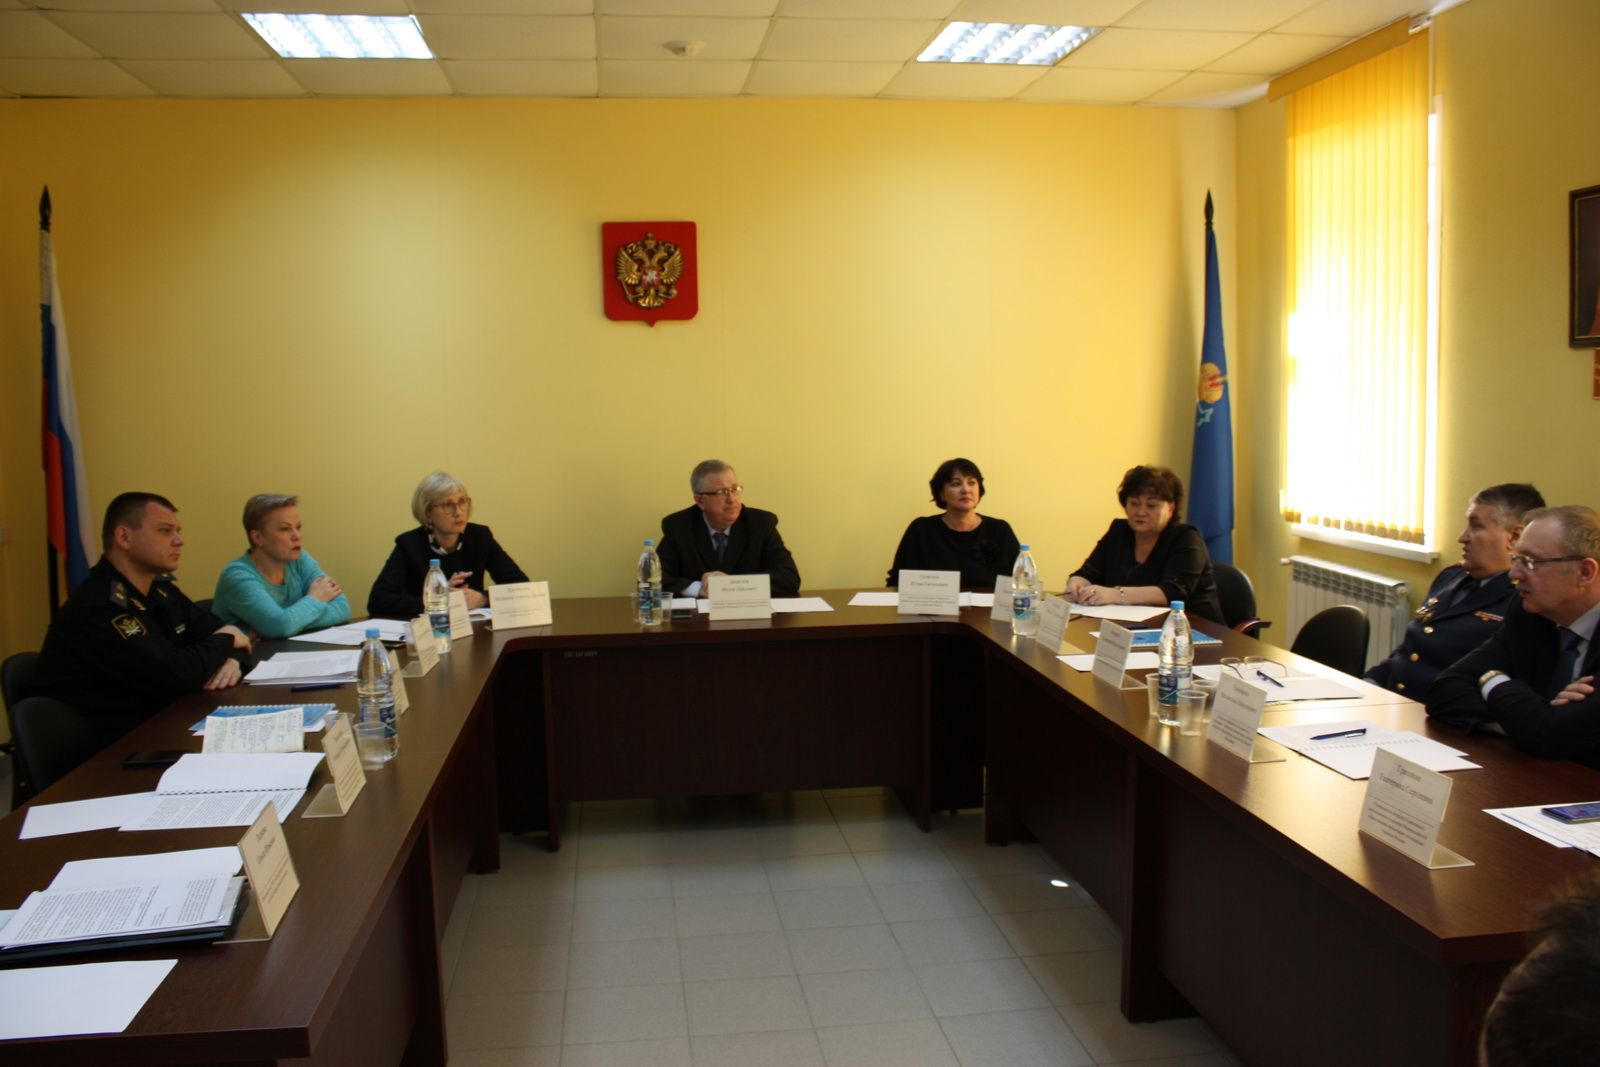 Члены Ульяновского регионального отделения приняли участие в заседании Координационного совета при Управлении Министерства юстиции РФ по Ульяновской области